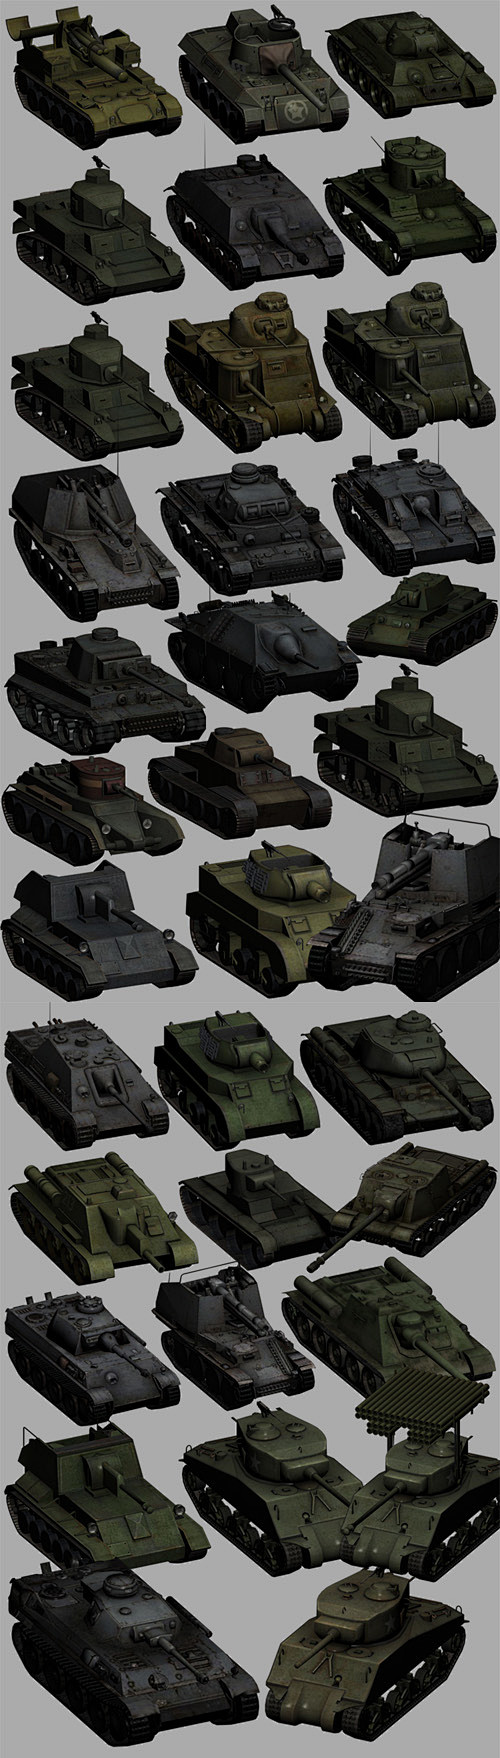 【低模】写实风格坦克模型集